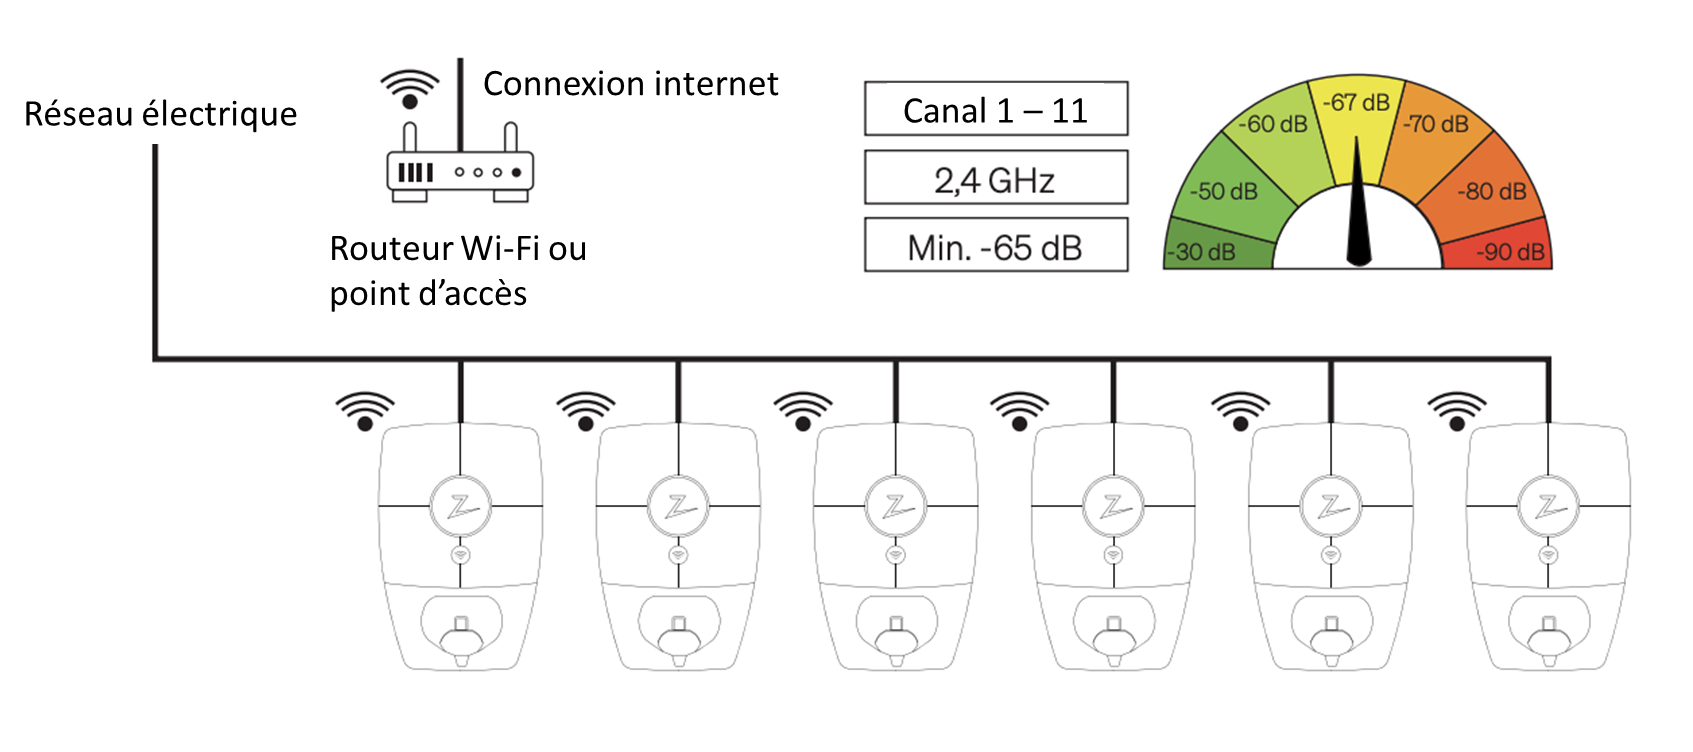 Réseaux / Connectivité